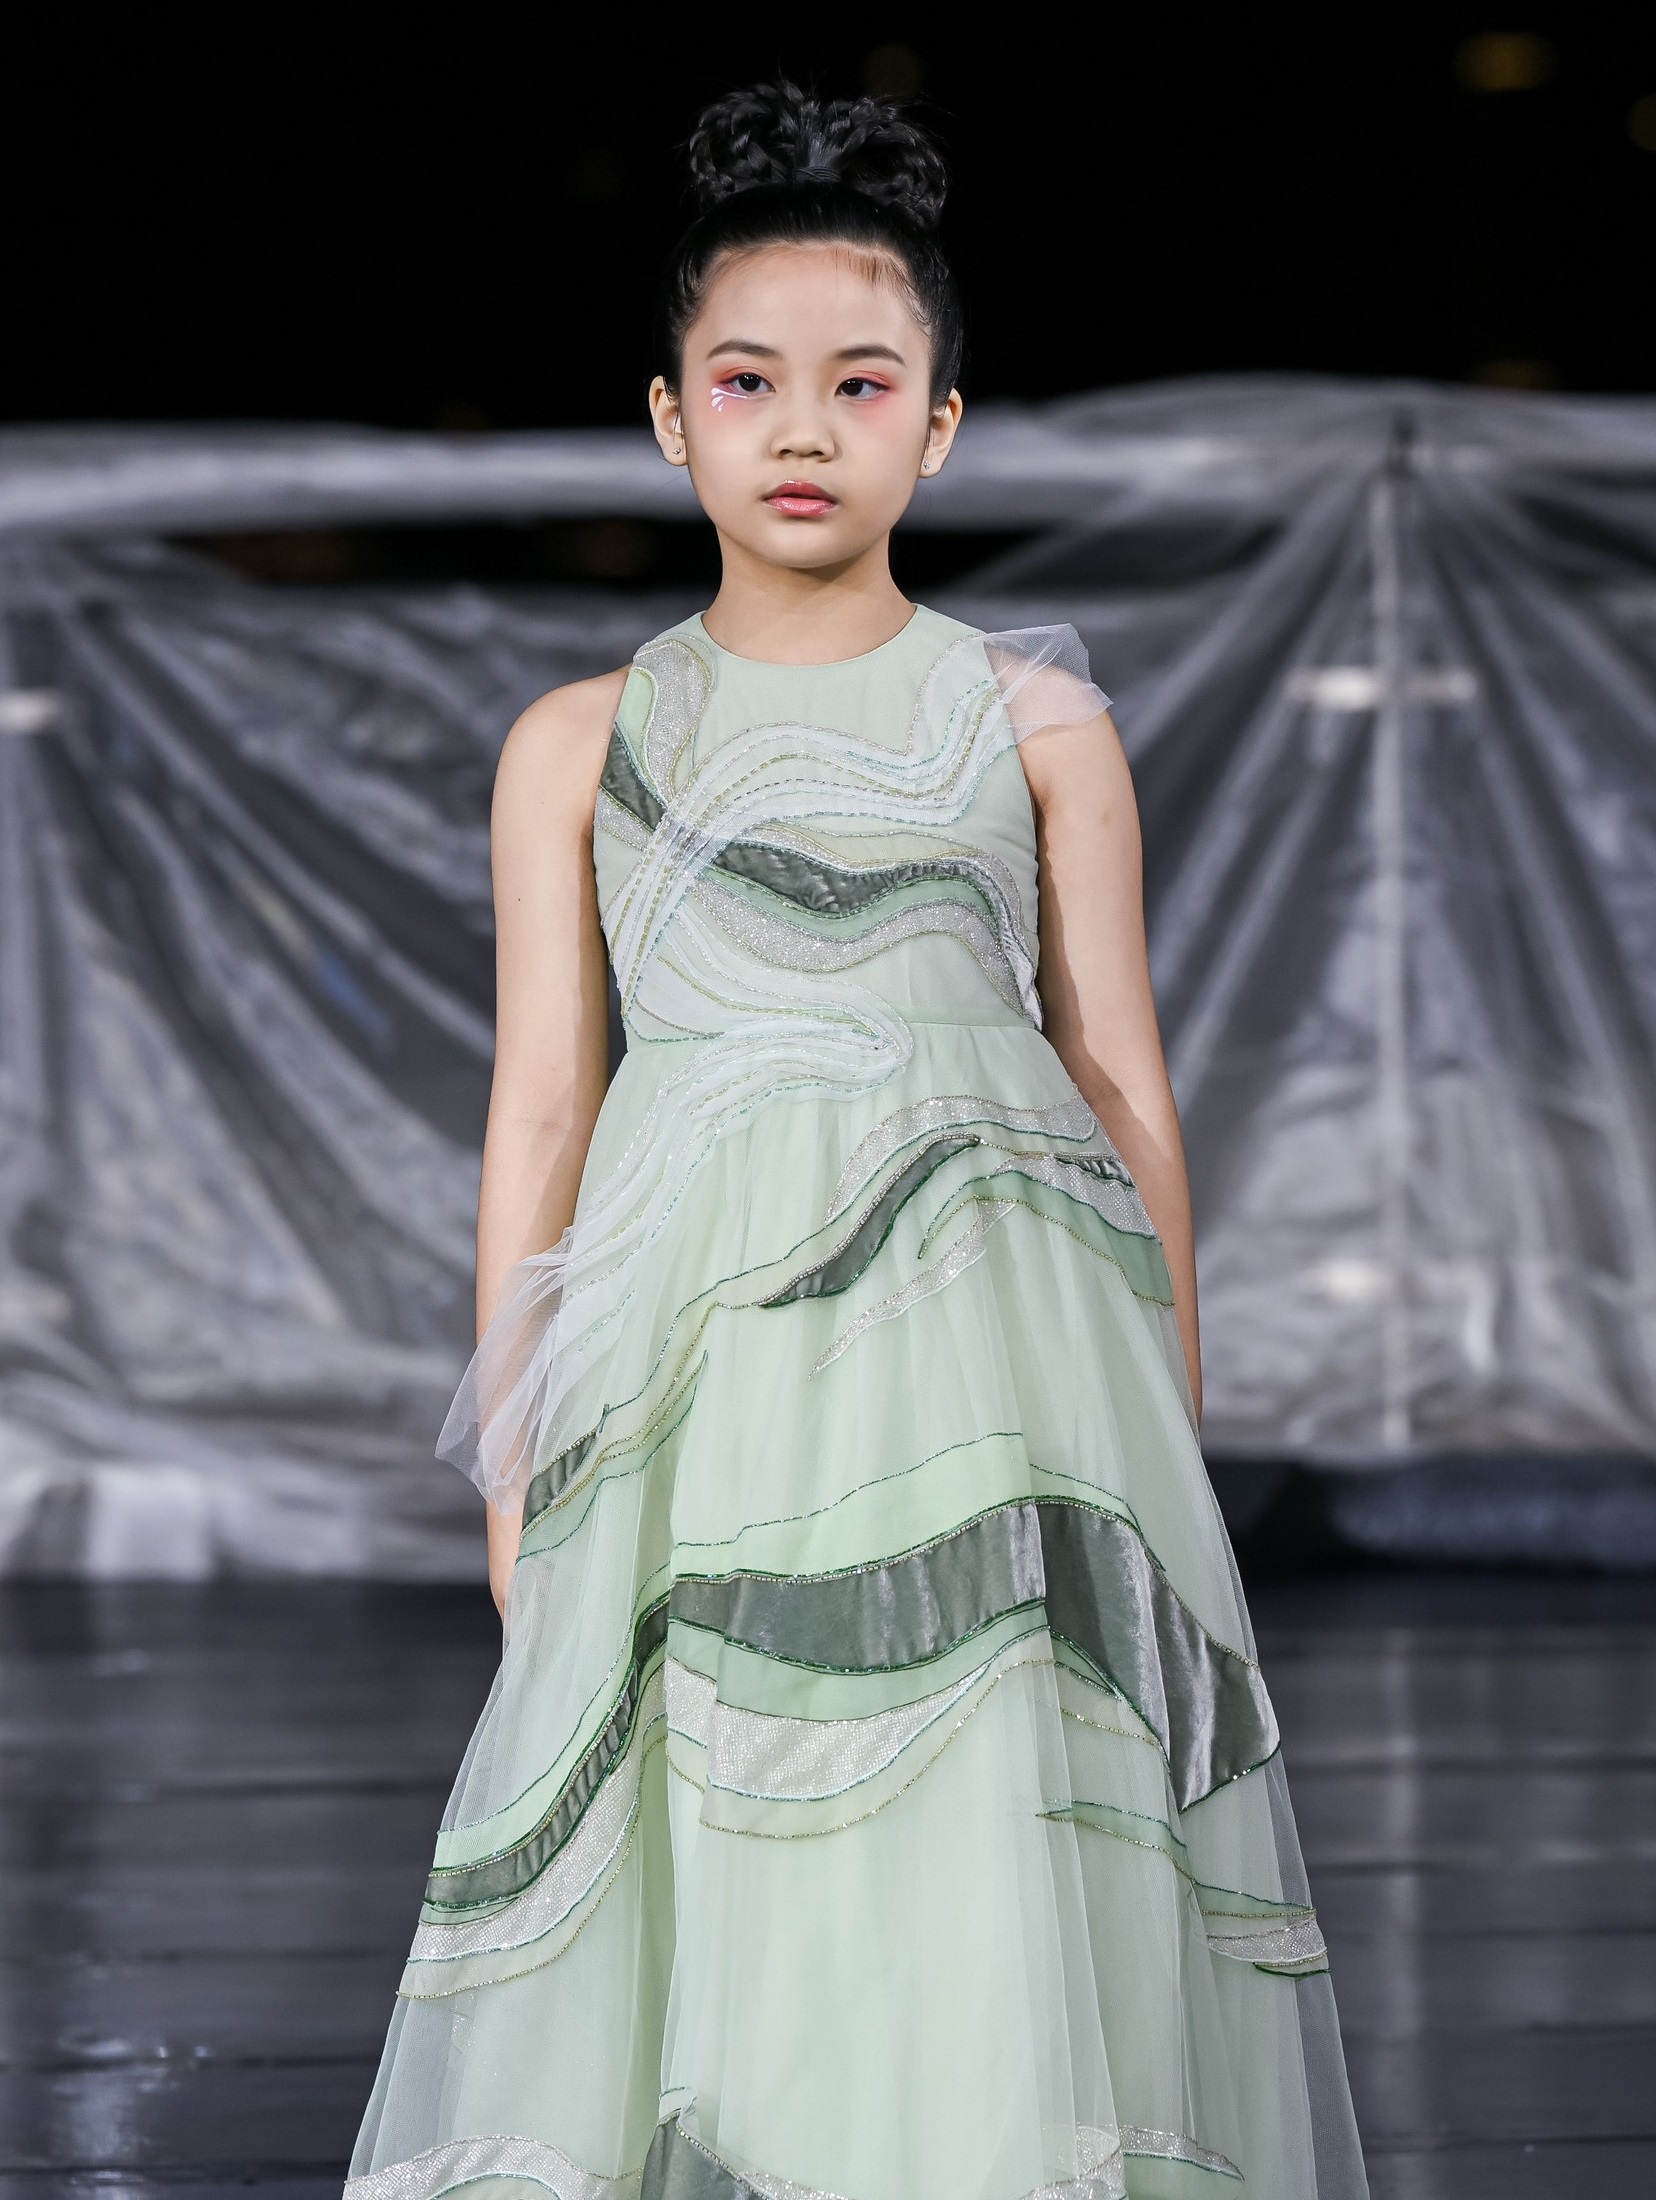 An Cát Diệp tham gia trình diễn cho một thương hiệu thời trang đến từ Trung Quốc với bộ sưu tập mang tên “Giấc mơ trở lại con đường tơ lụa”.